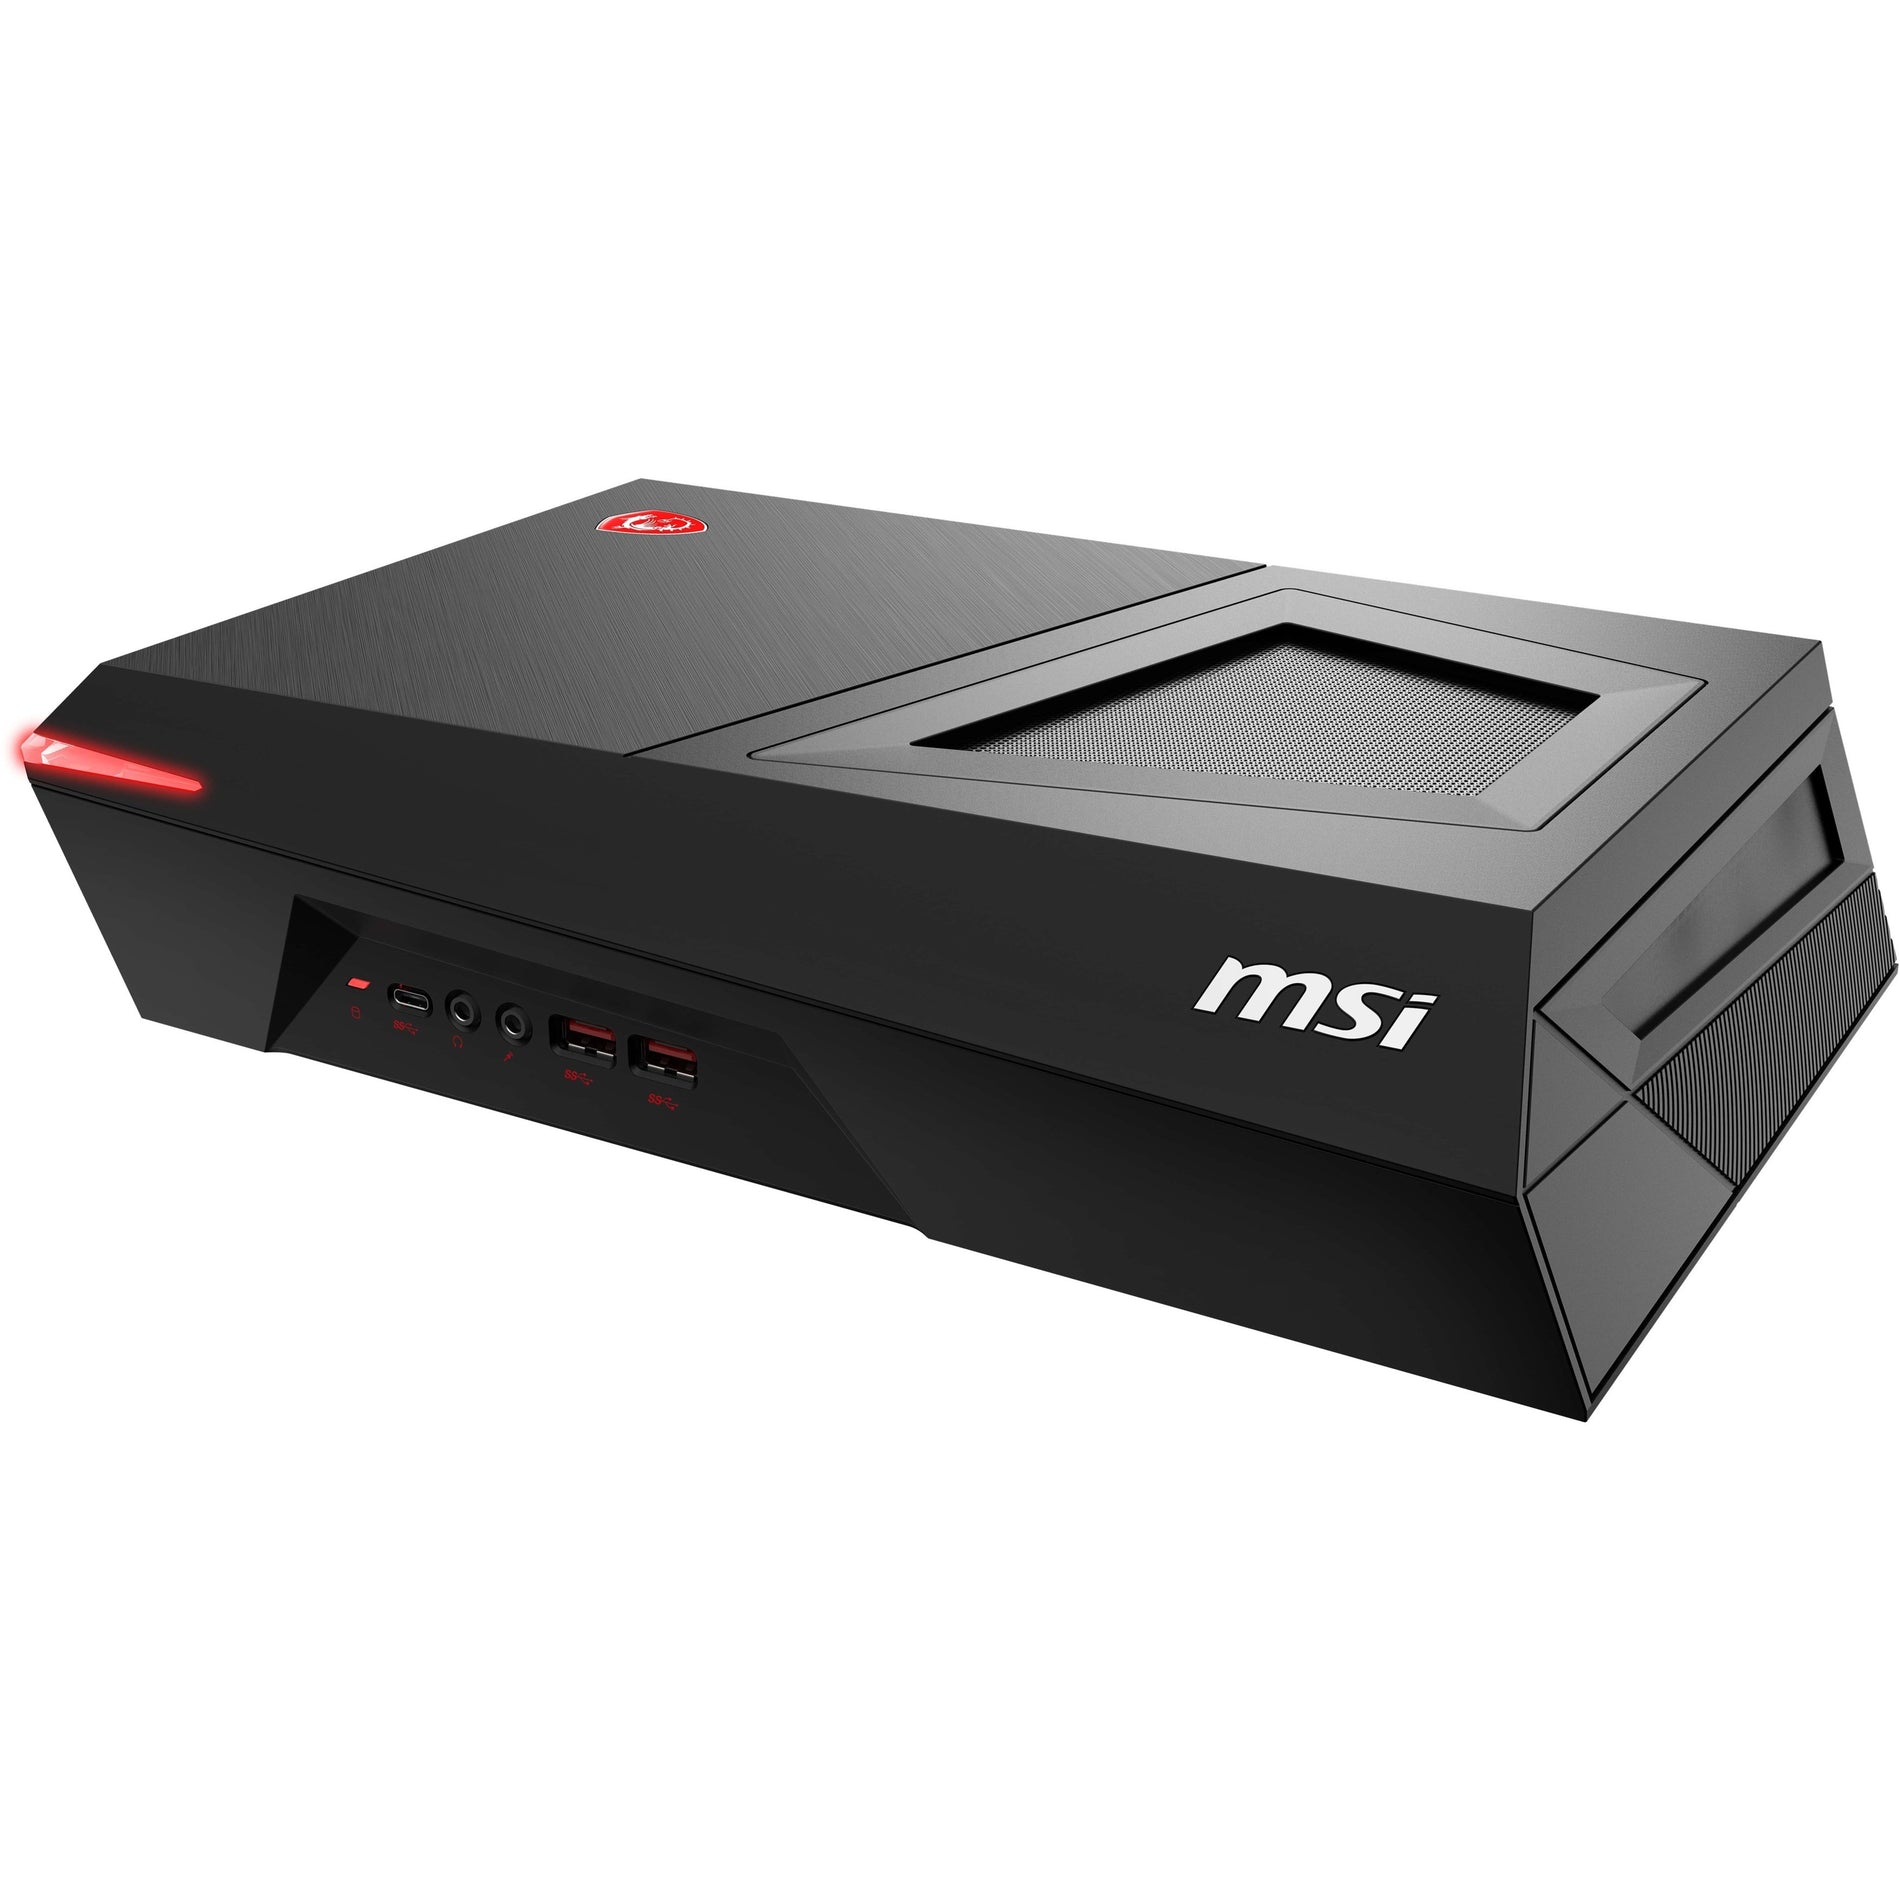 MSI TR313TC075 MPG Trident 3 13th Gaming Desktop Computer - Intel Core i5 13th Gen, 16GB RAM, 512GB SSD, Windows 11